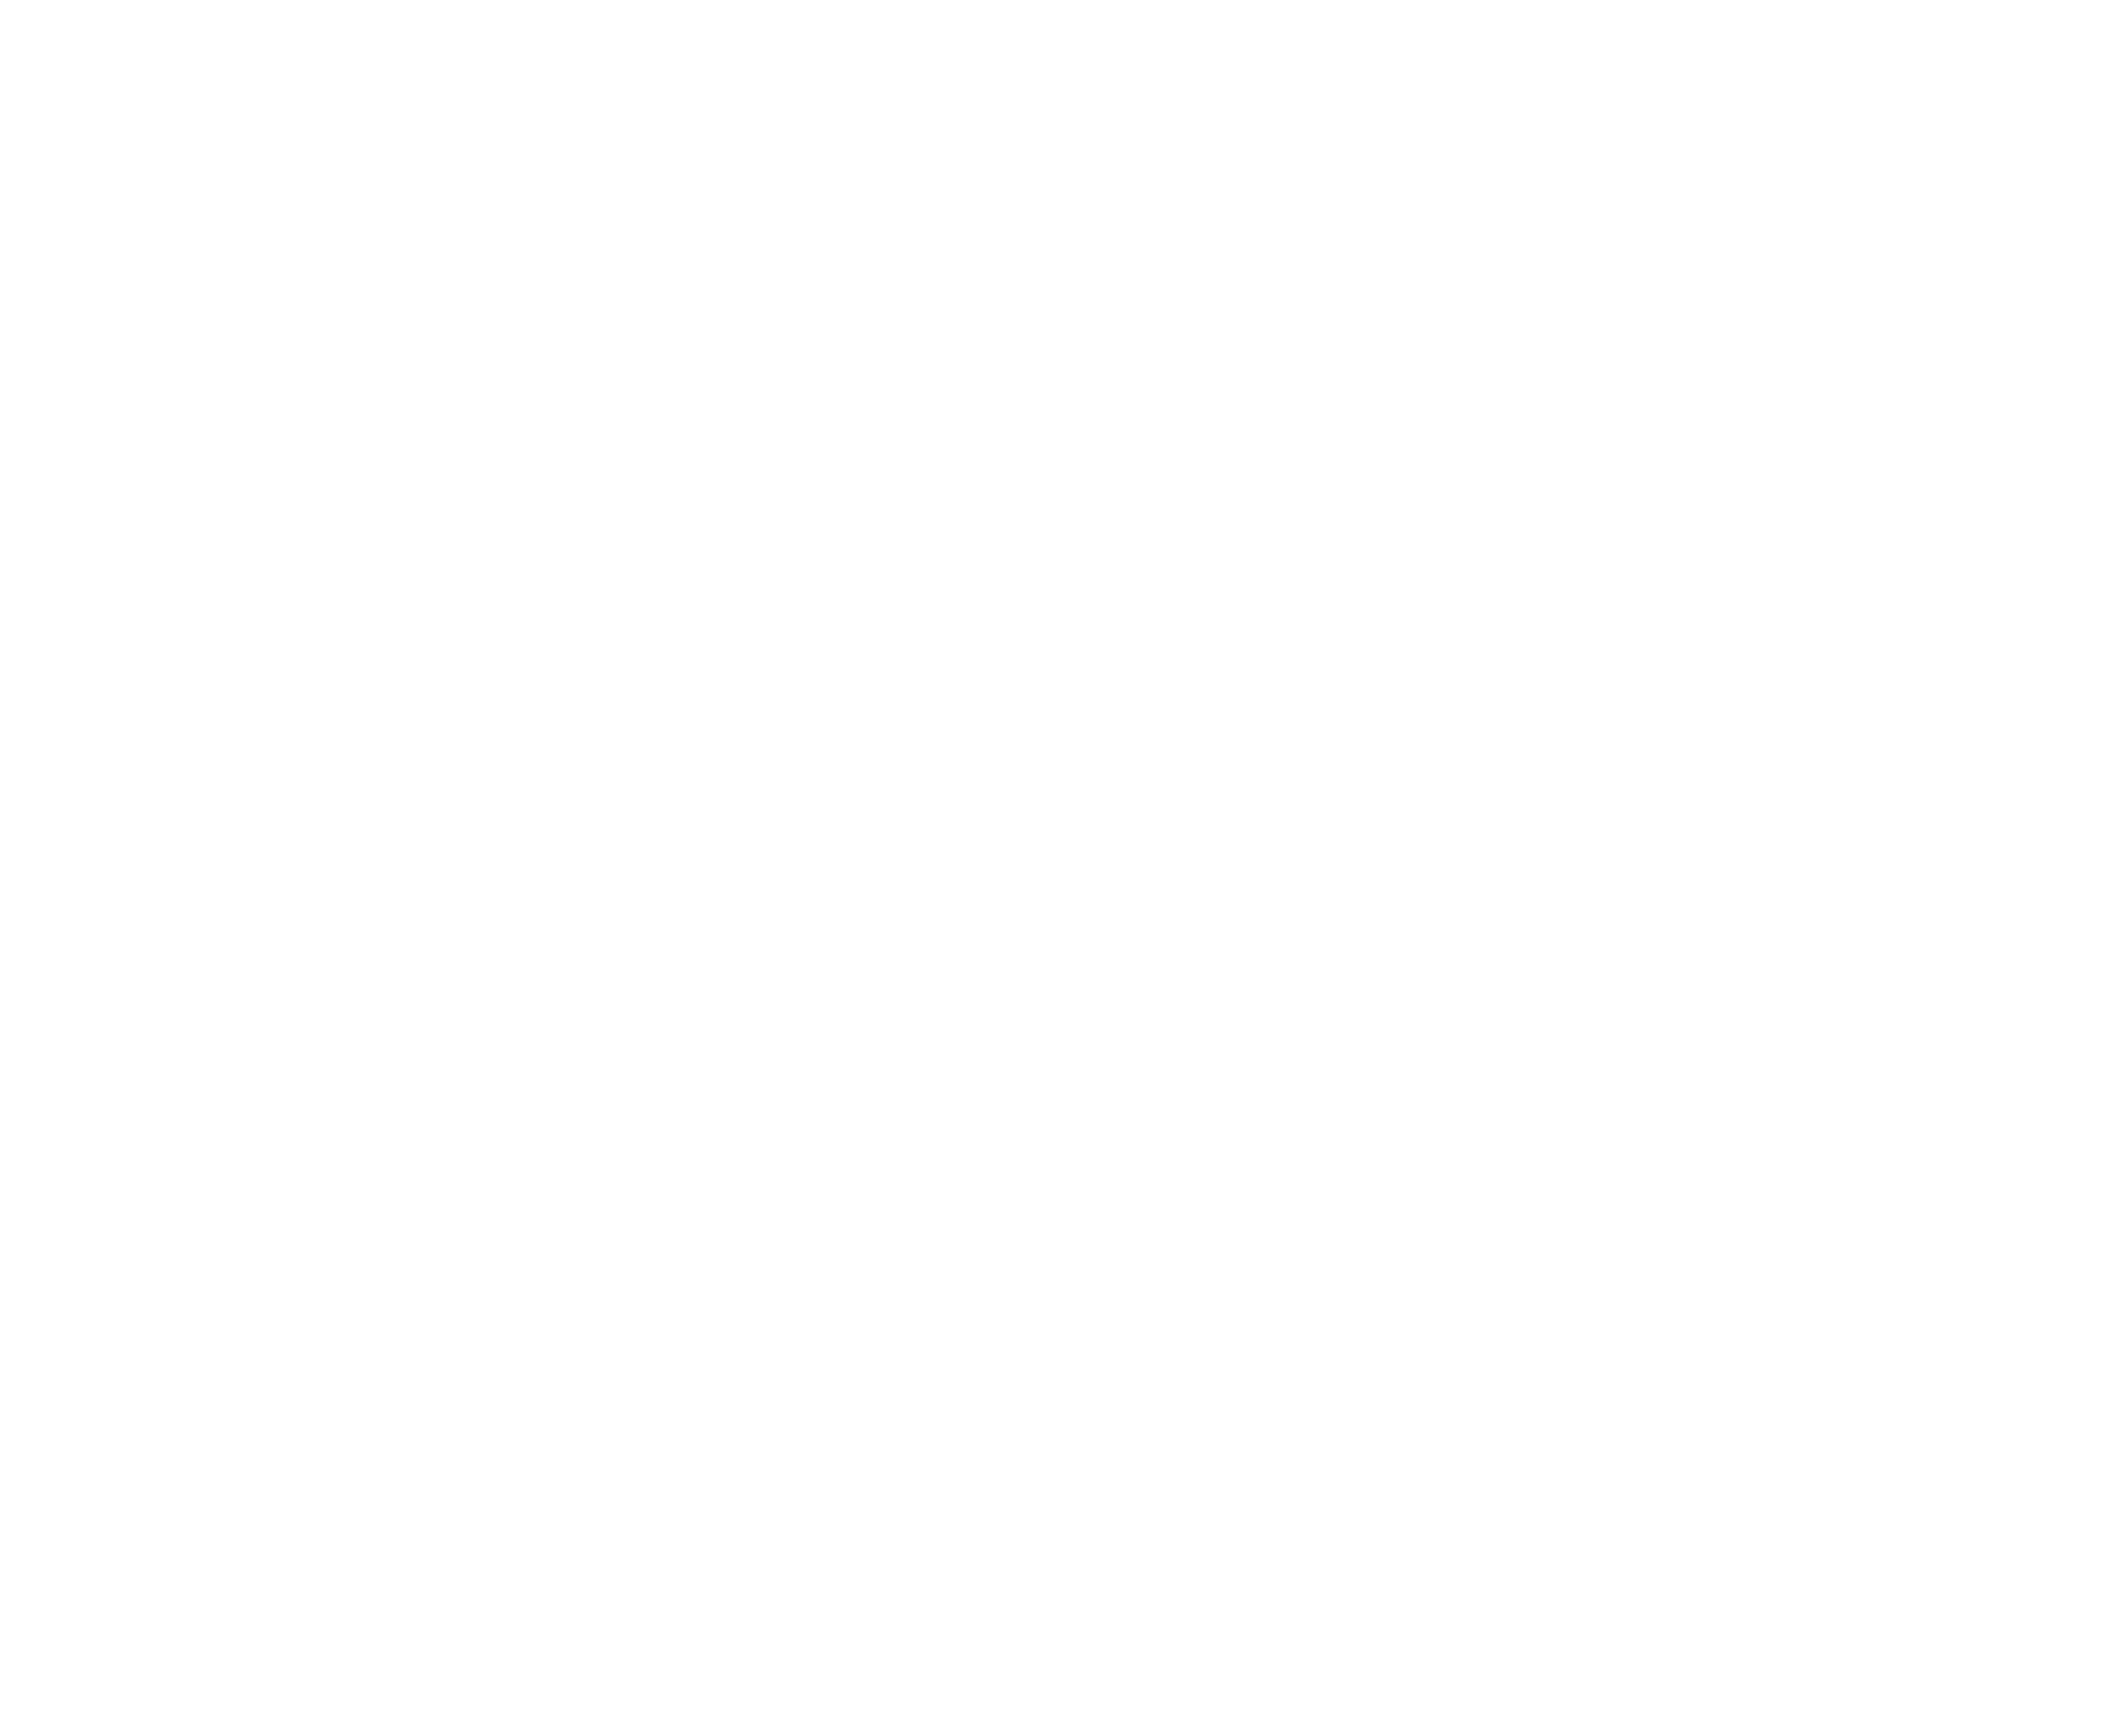 WorldSkills USA logo. White